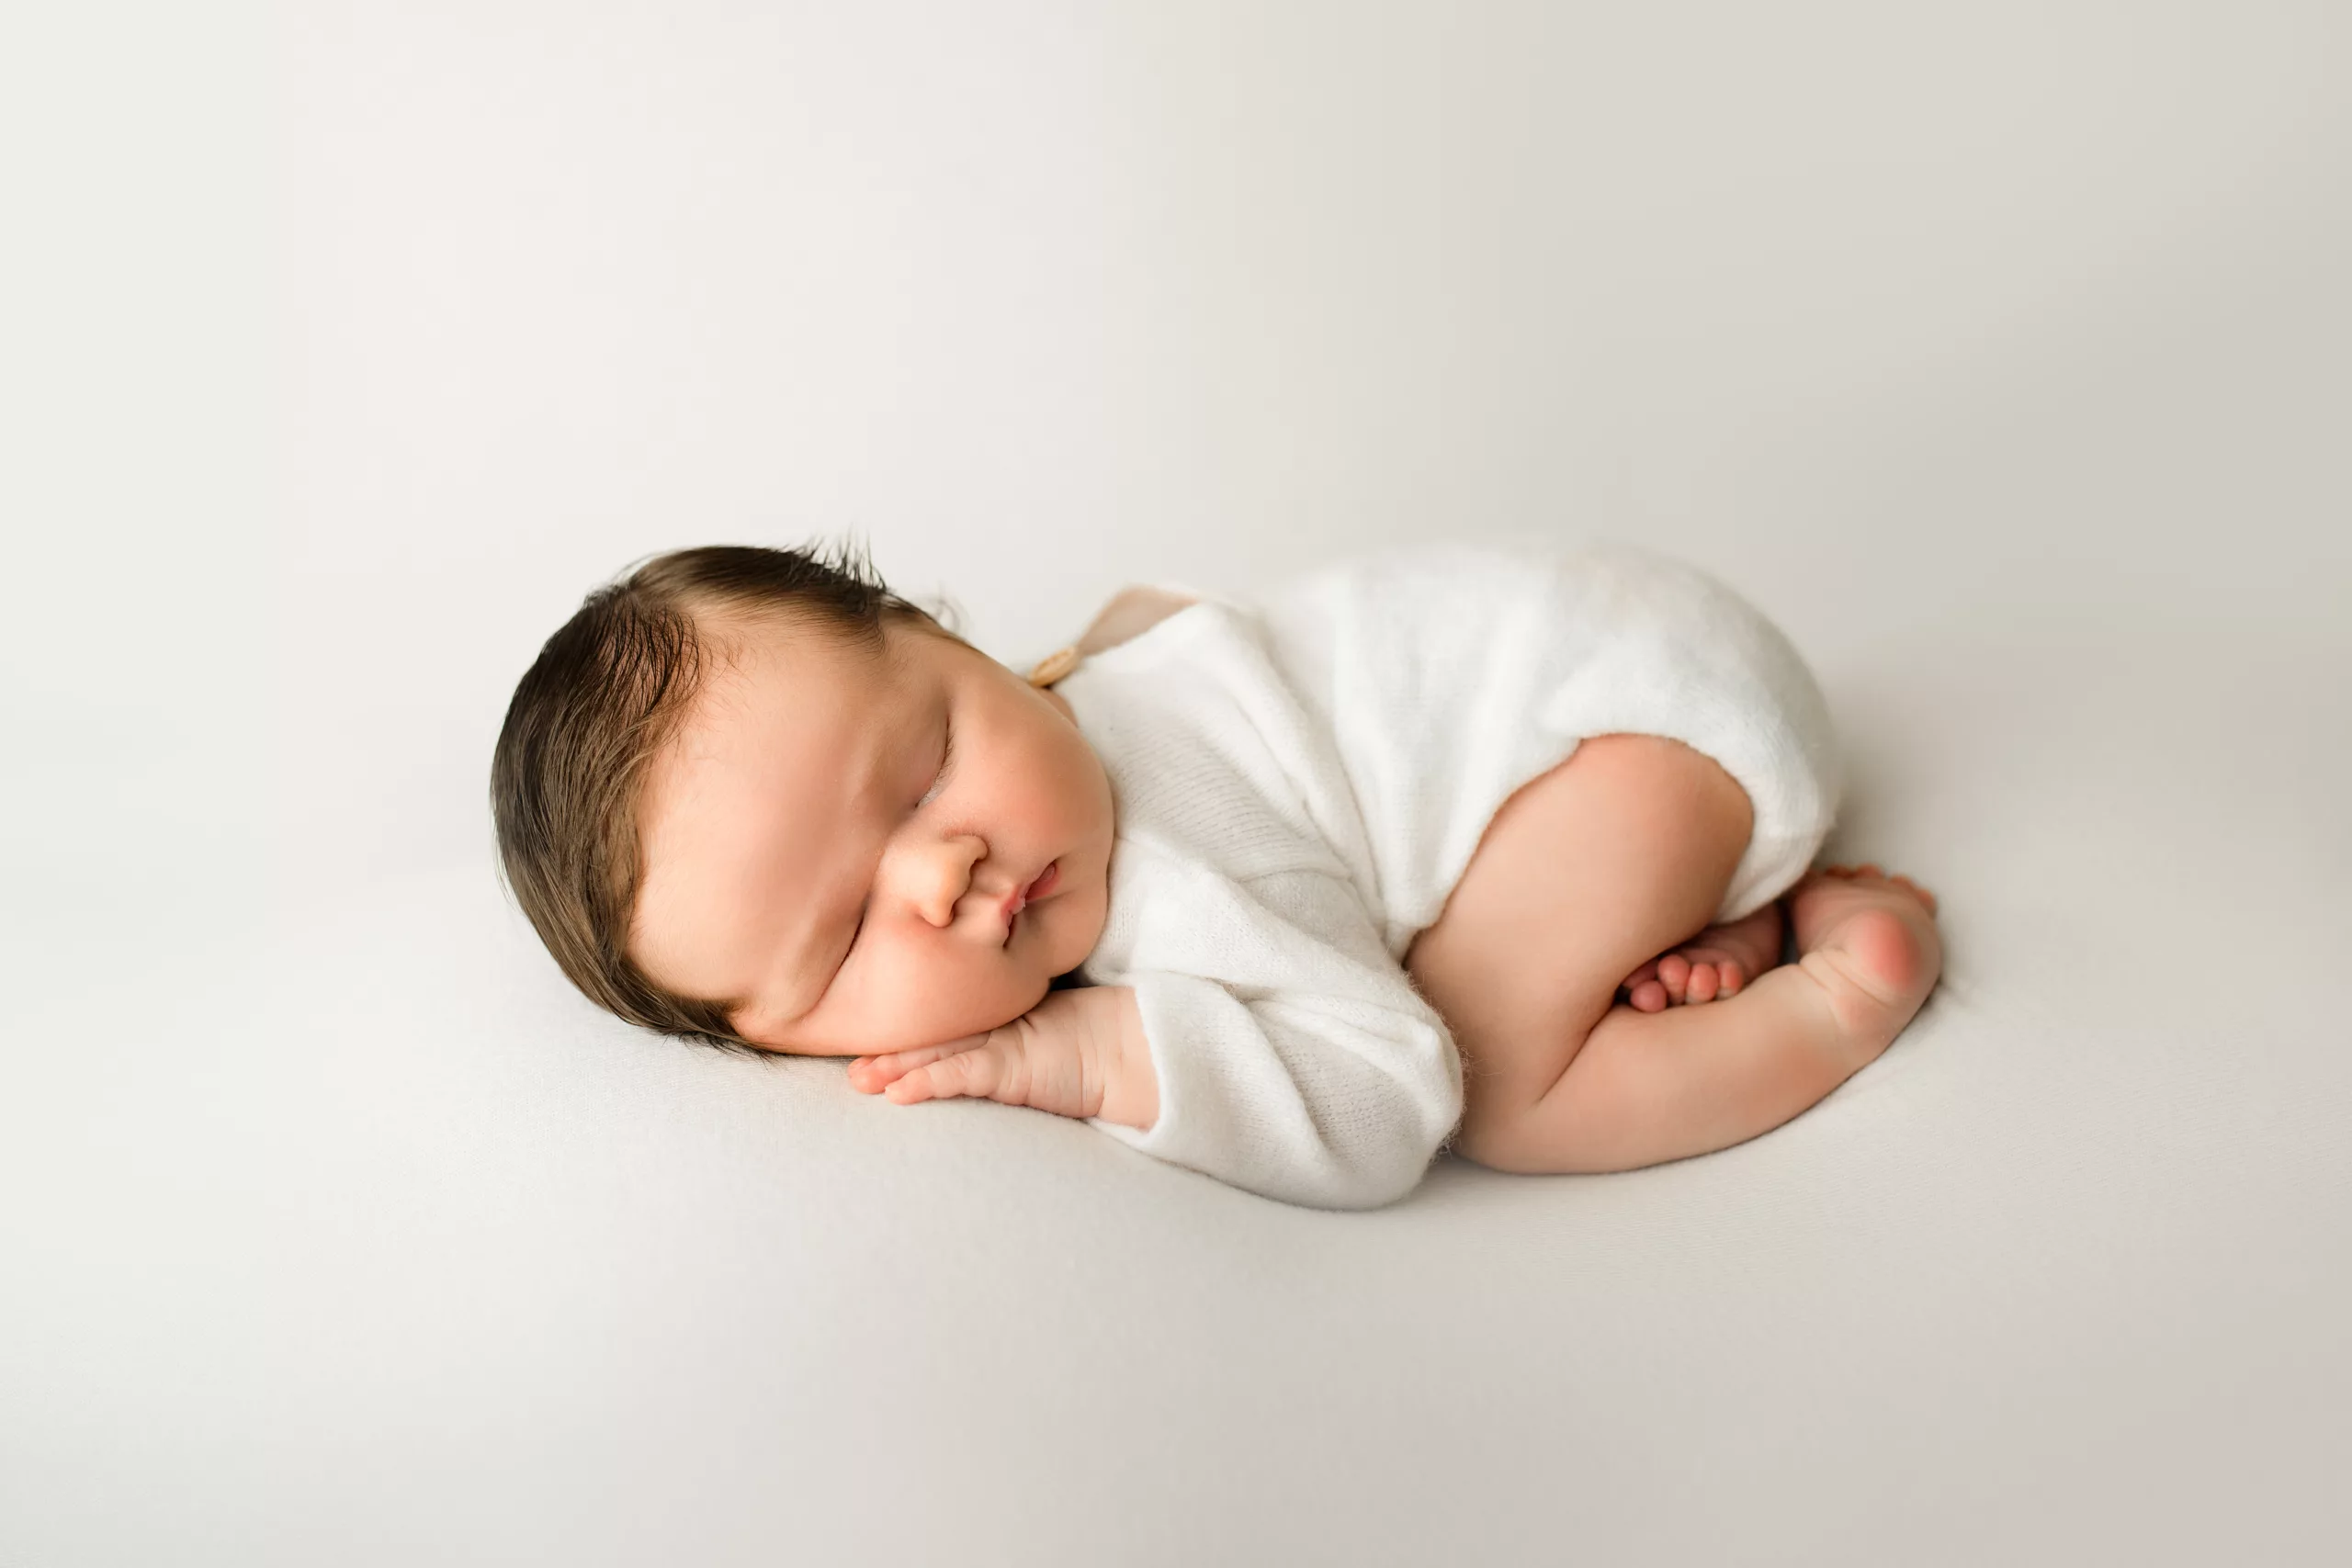 Newborn, baby, family photographer Newburgh - Evansville IN newborn  photographer | Kerri Leach Photography